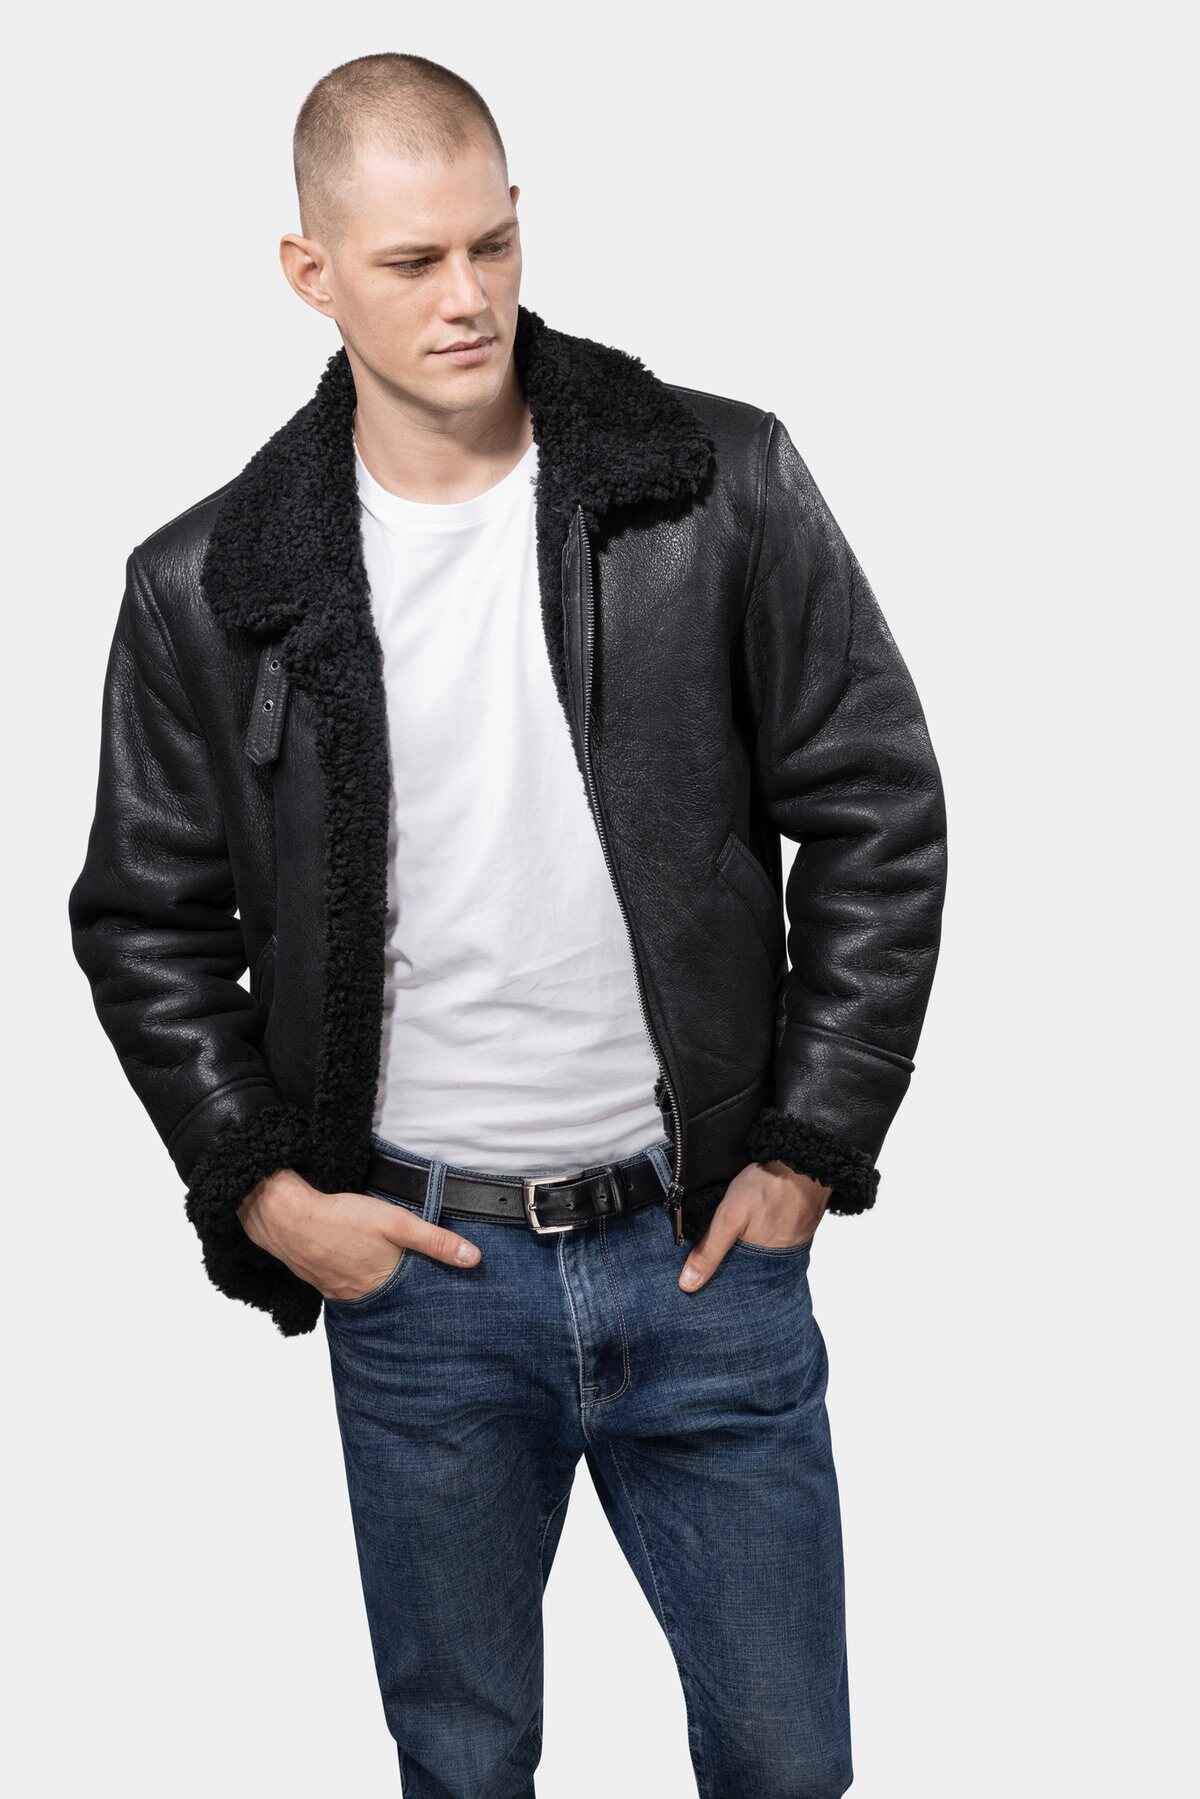 Model wearing Mens Black Shearling Leather Jacket open